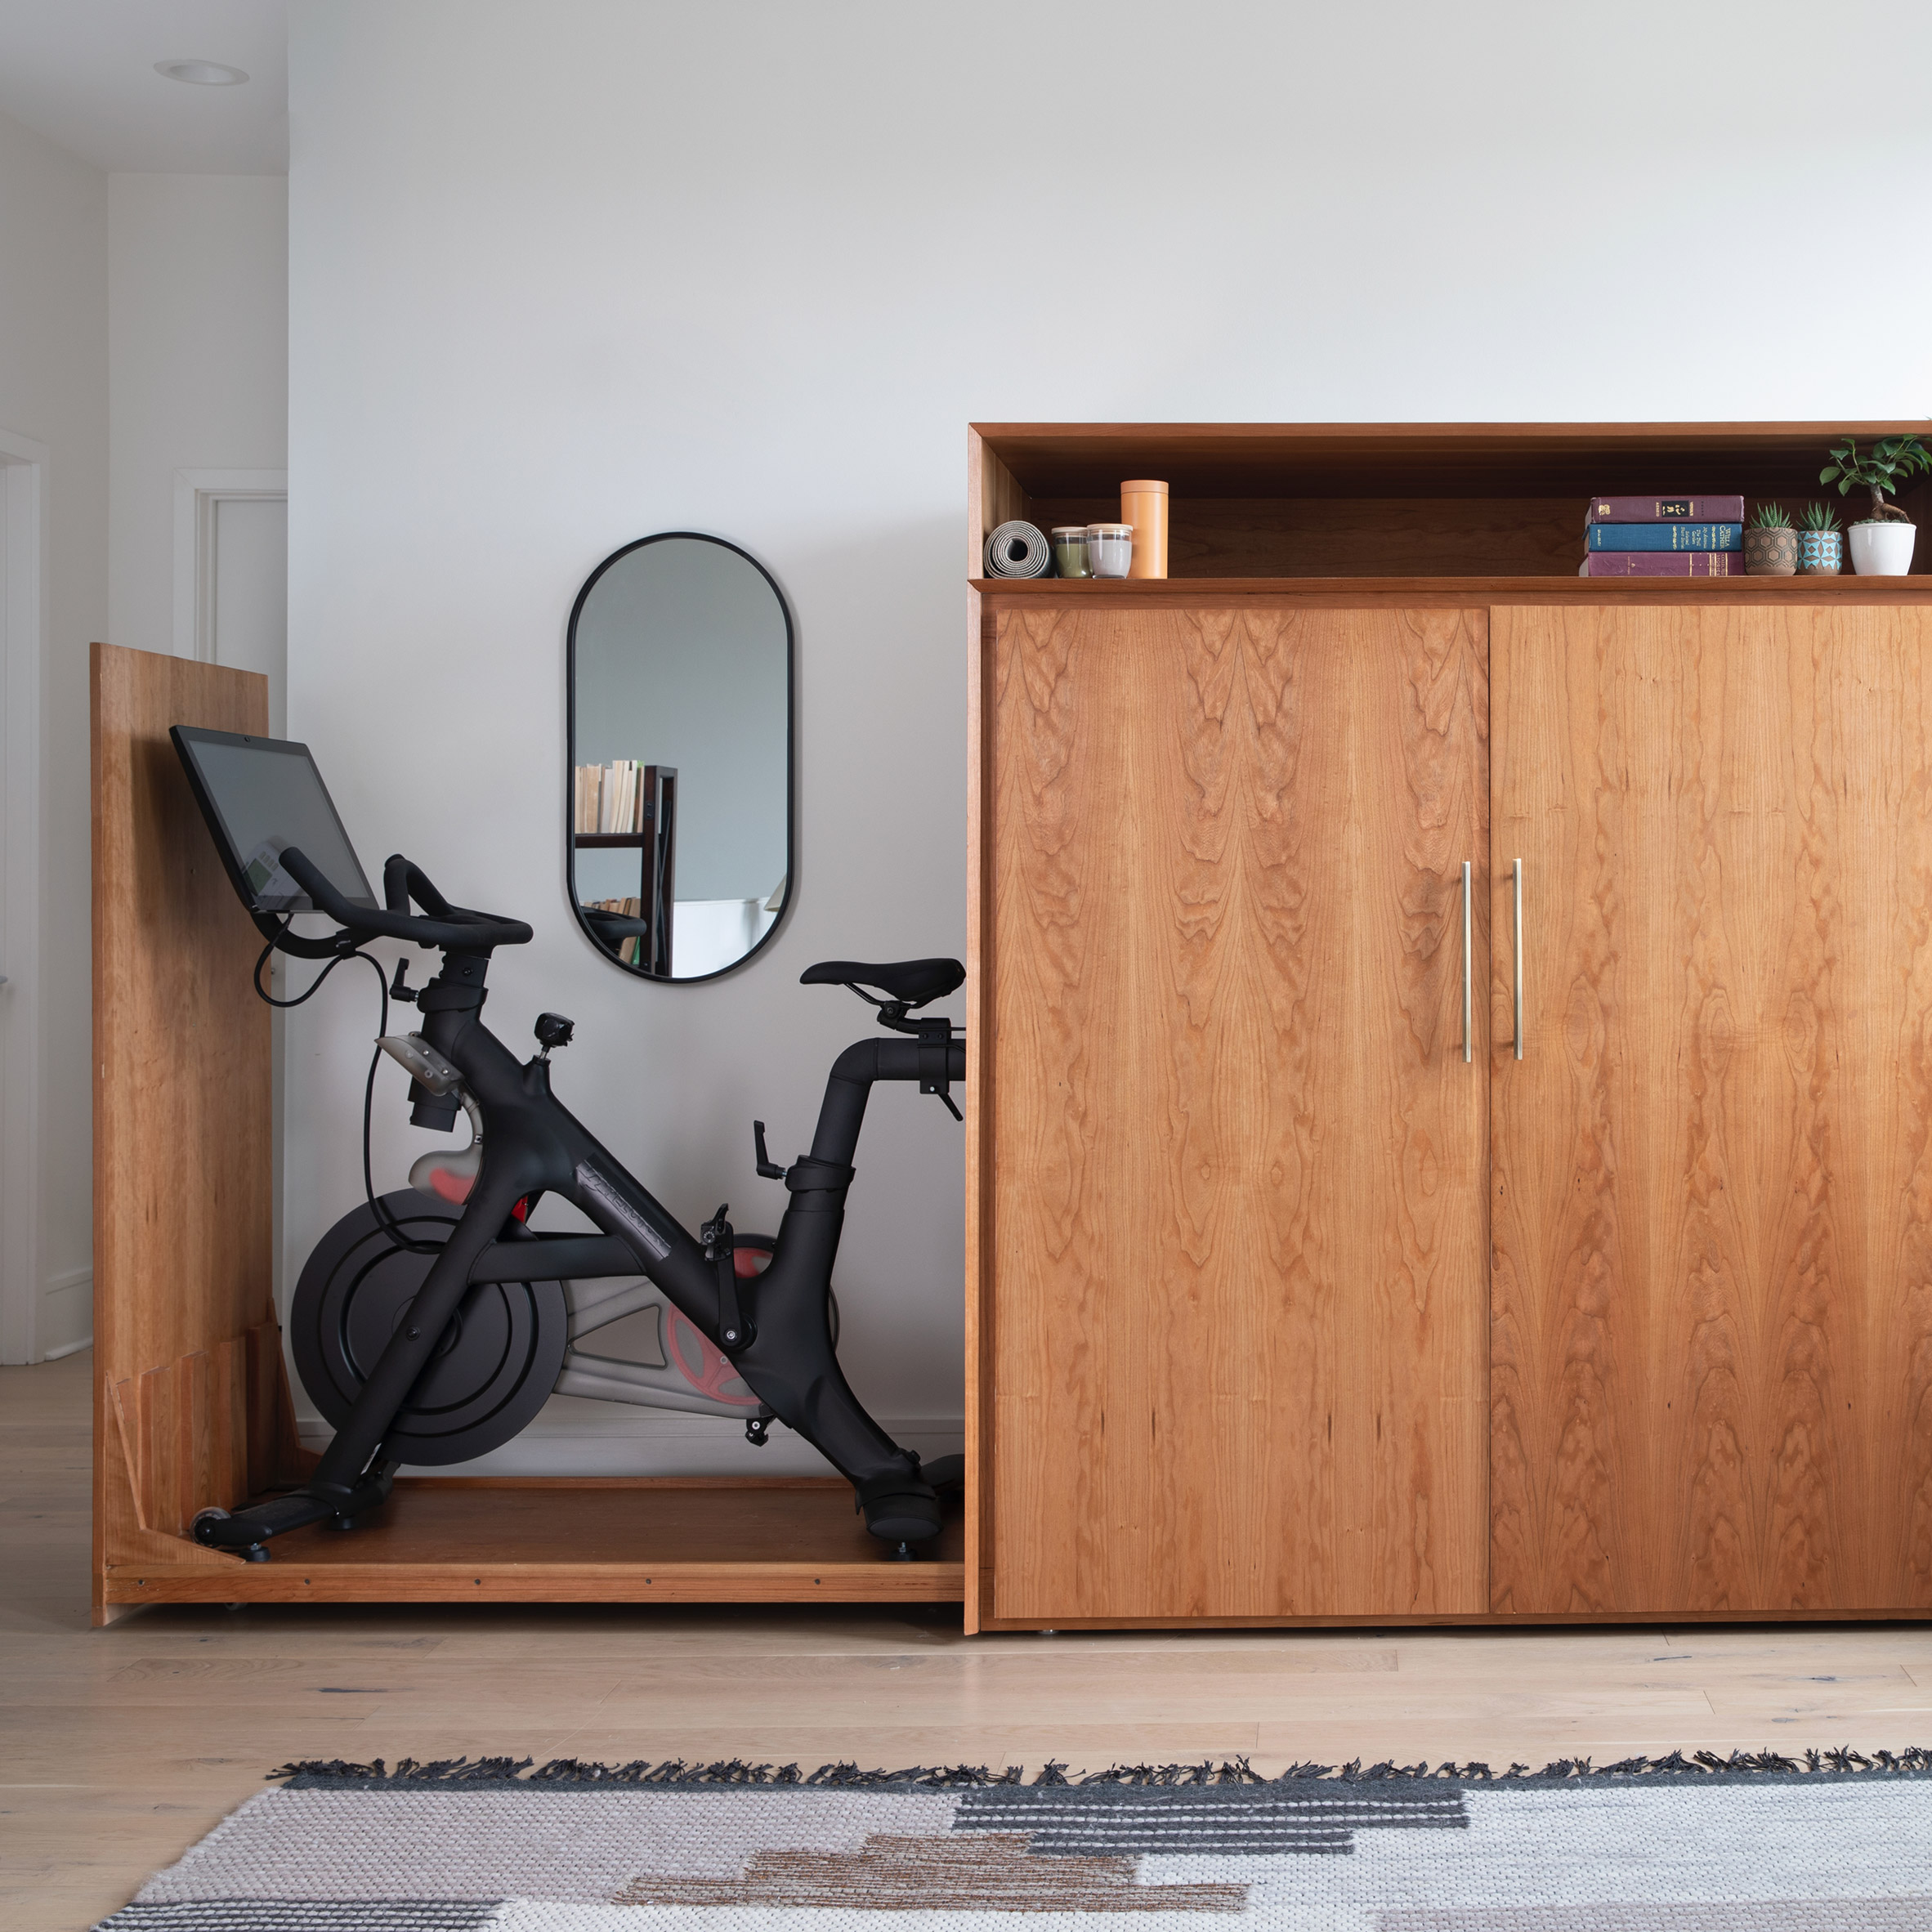 Boitier for Bike cabinet by Boitier